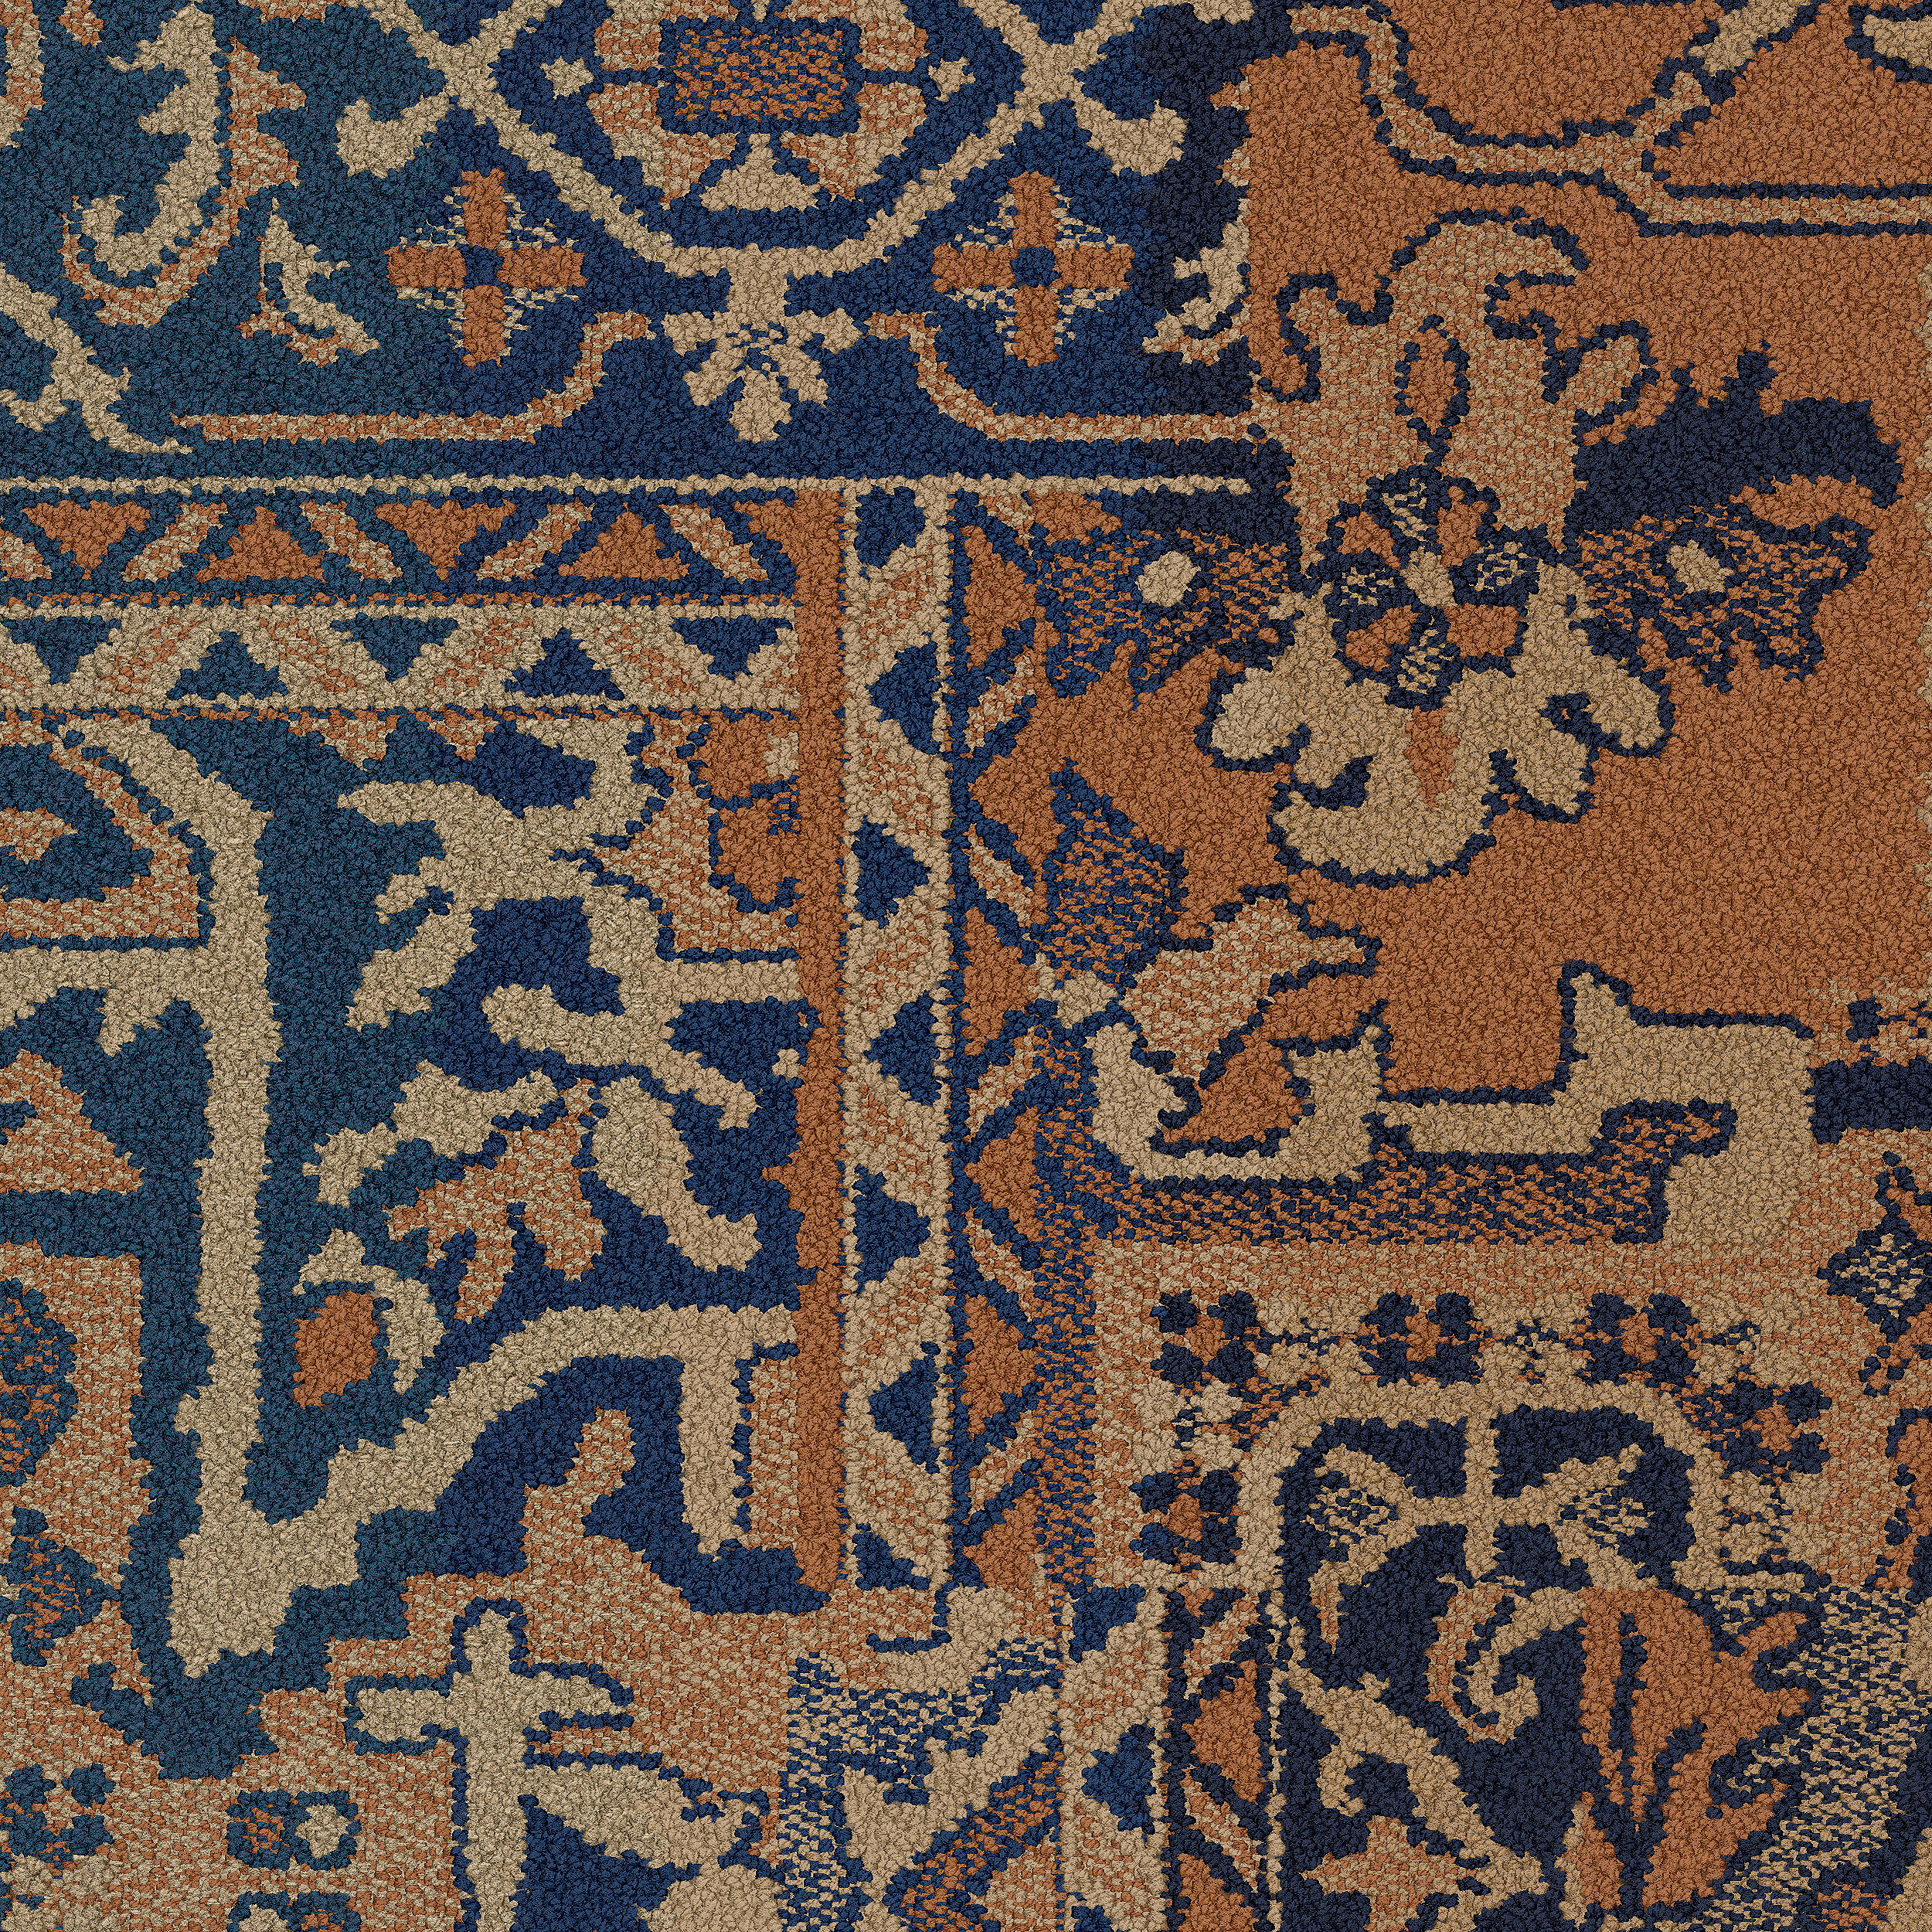 Antiquities carpet tile in Coral Bildnummer 6